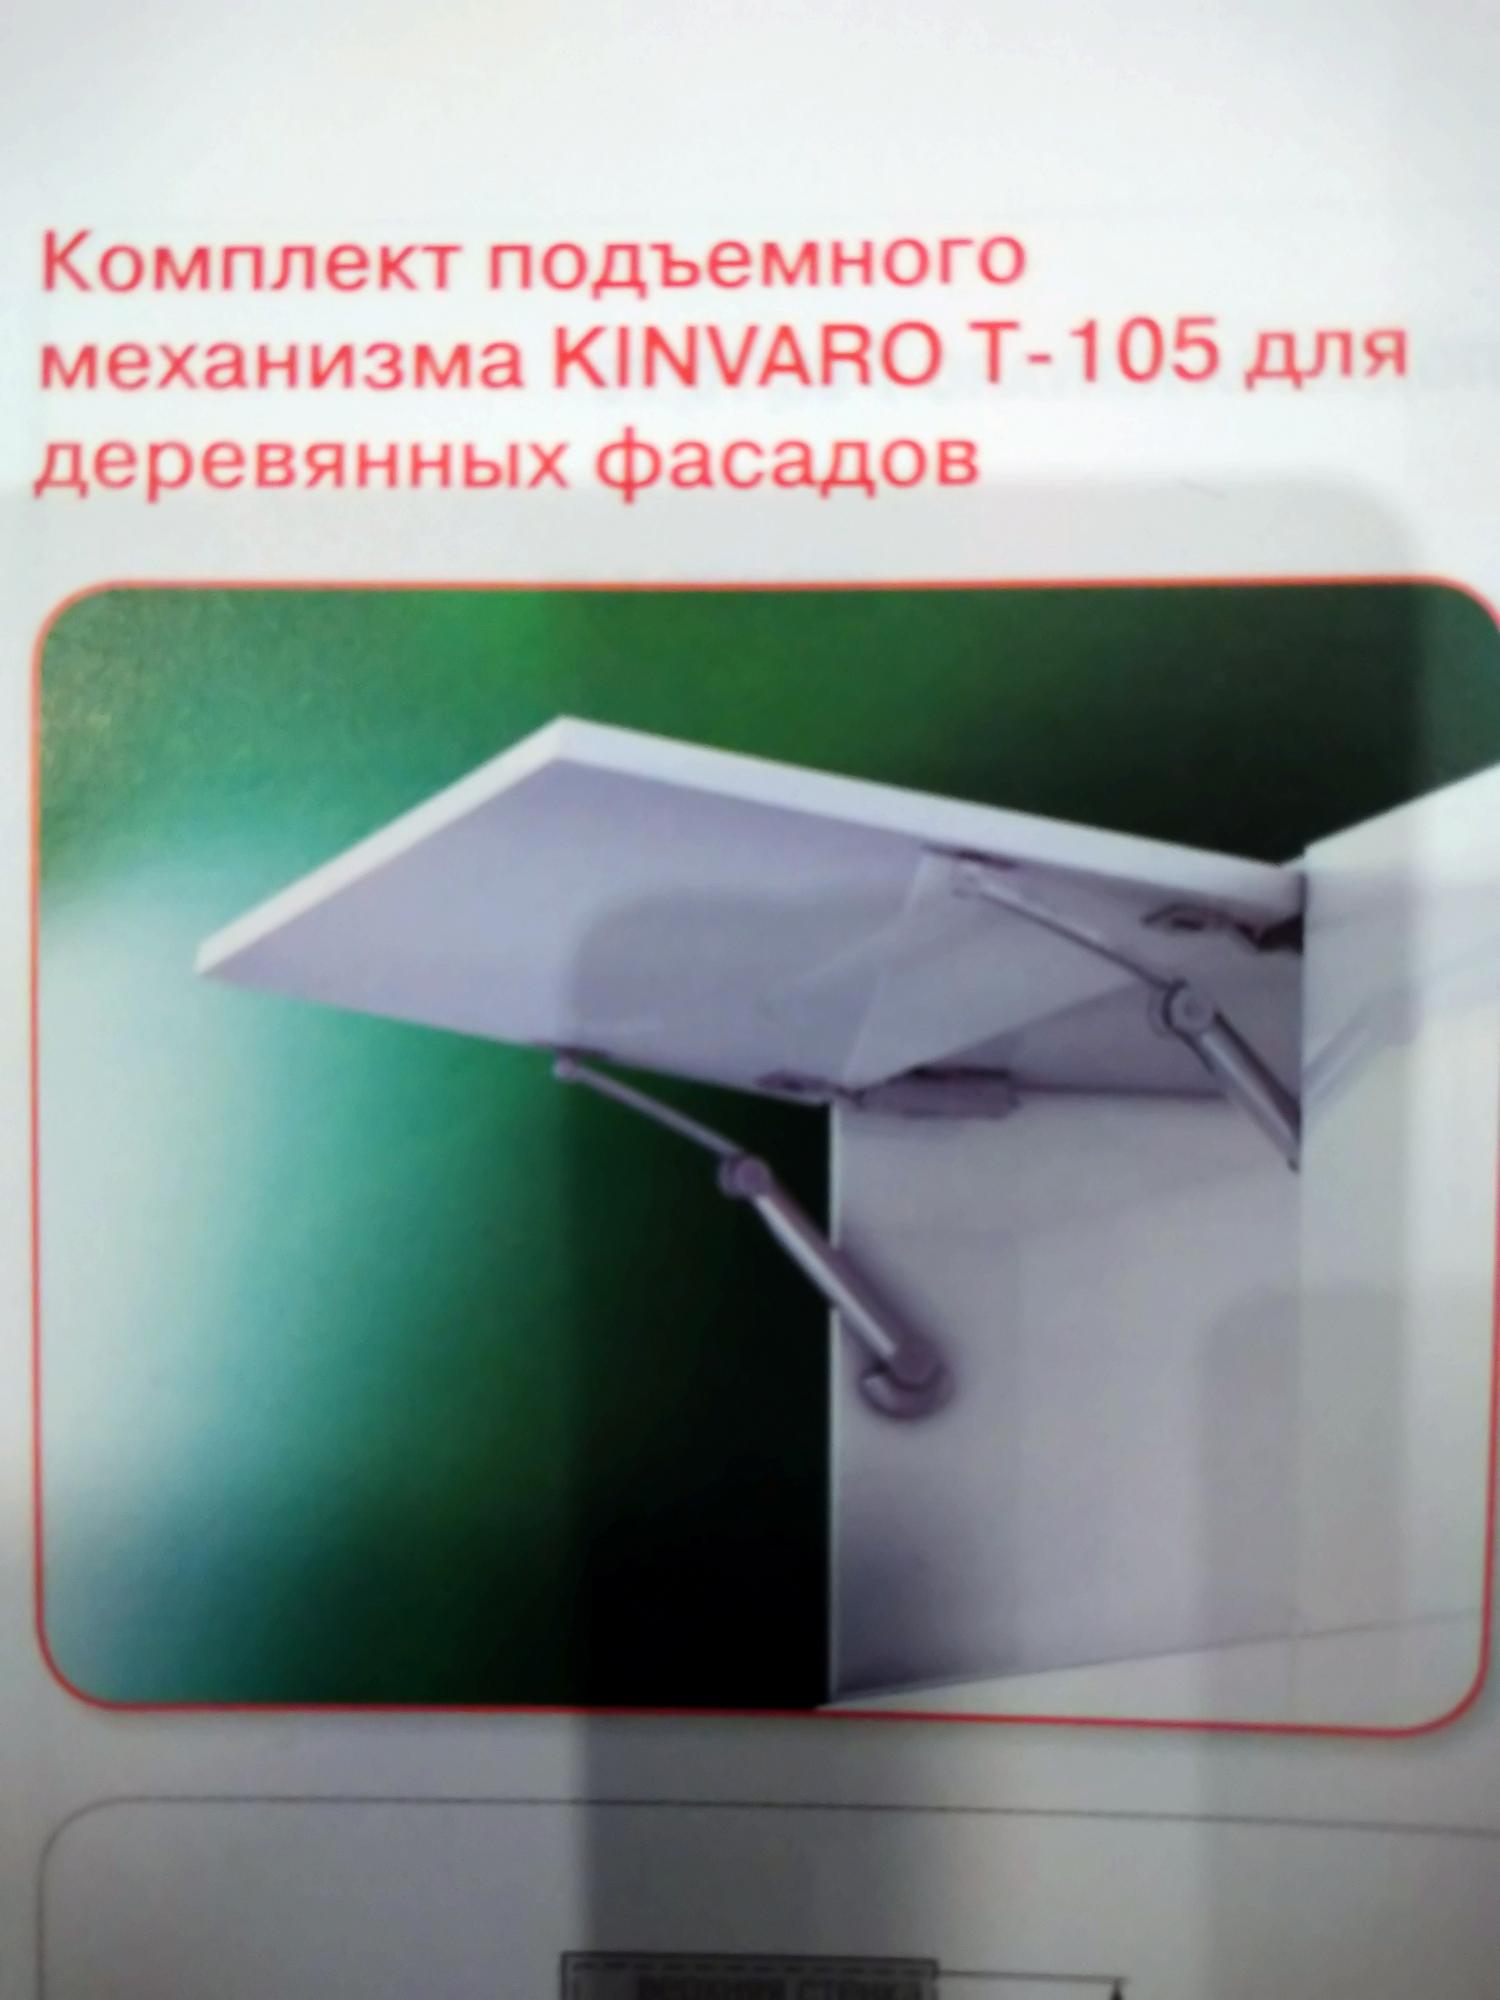 89800000485 Подьемный механизм для деревянных фасадов KINVARO.